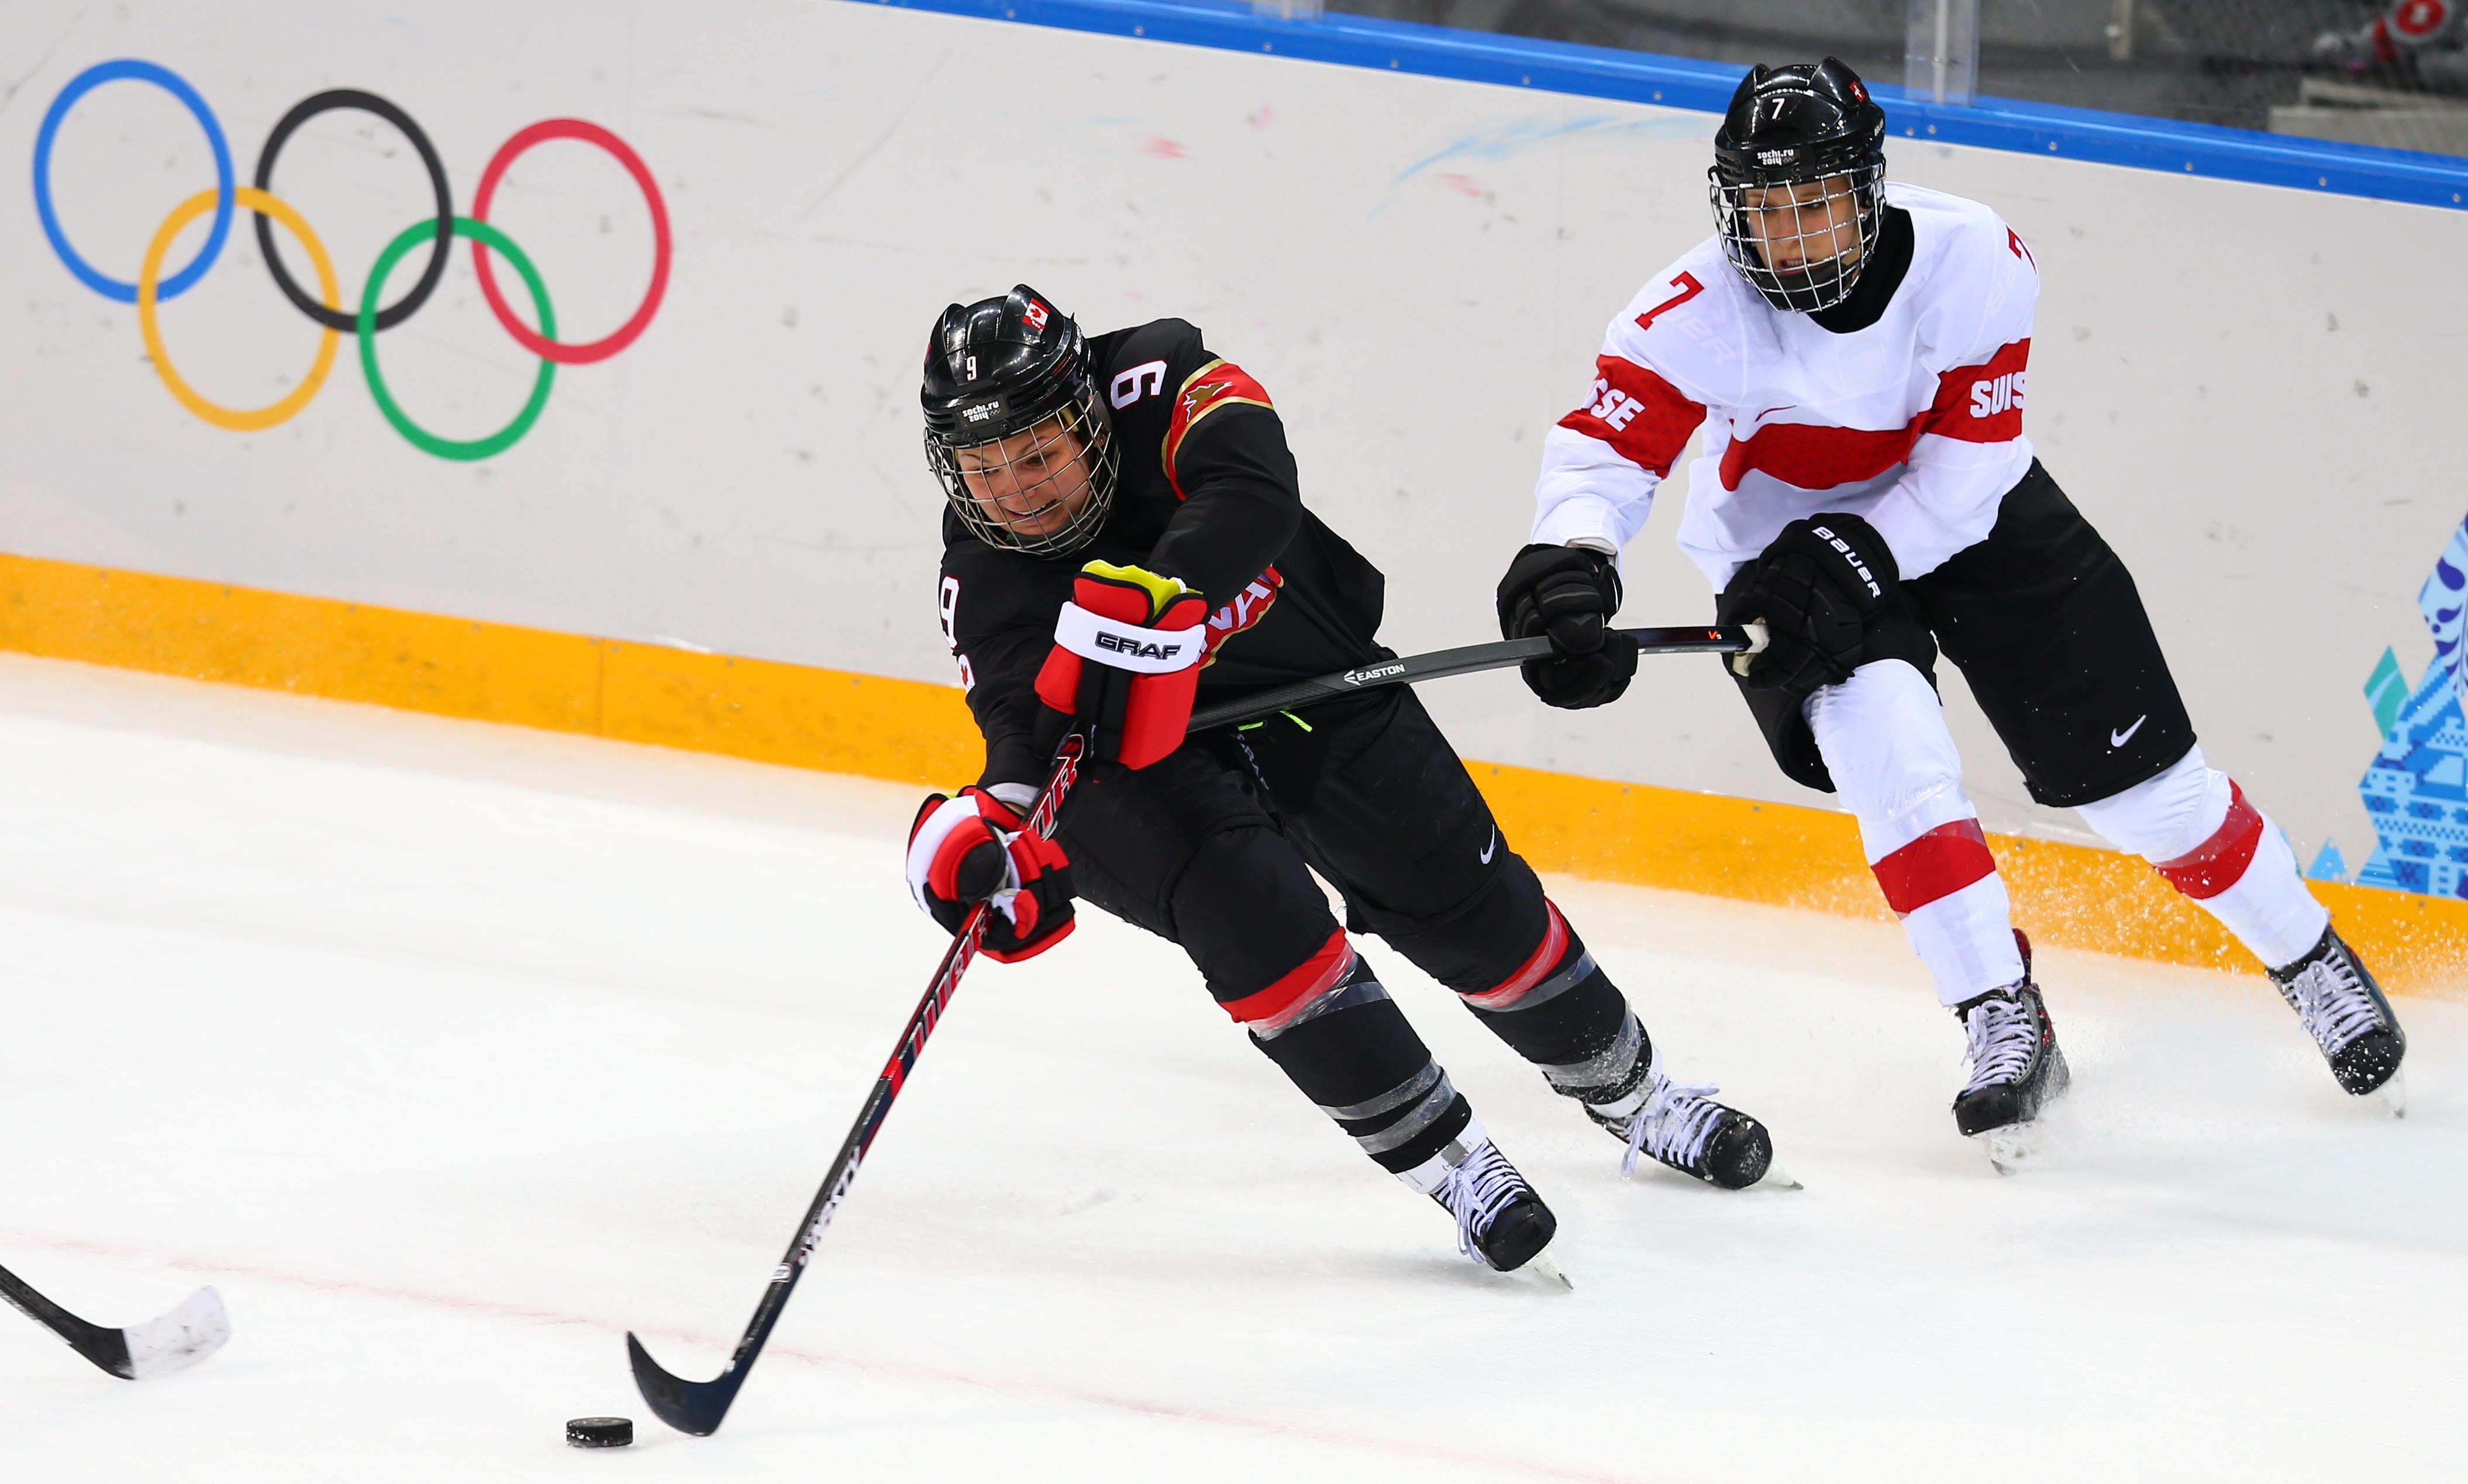 北京冬奥会来自2008年的冰球传承